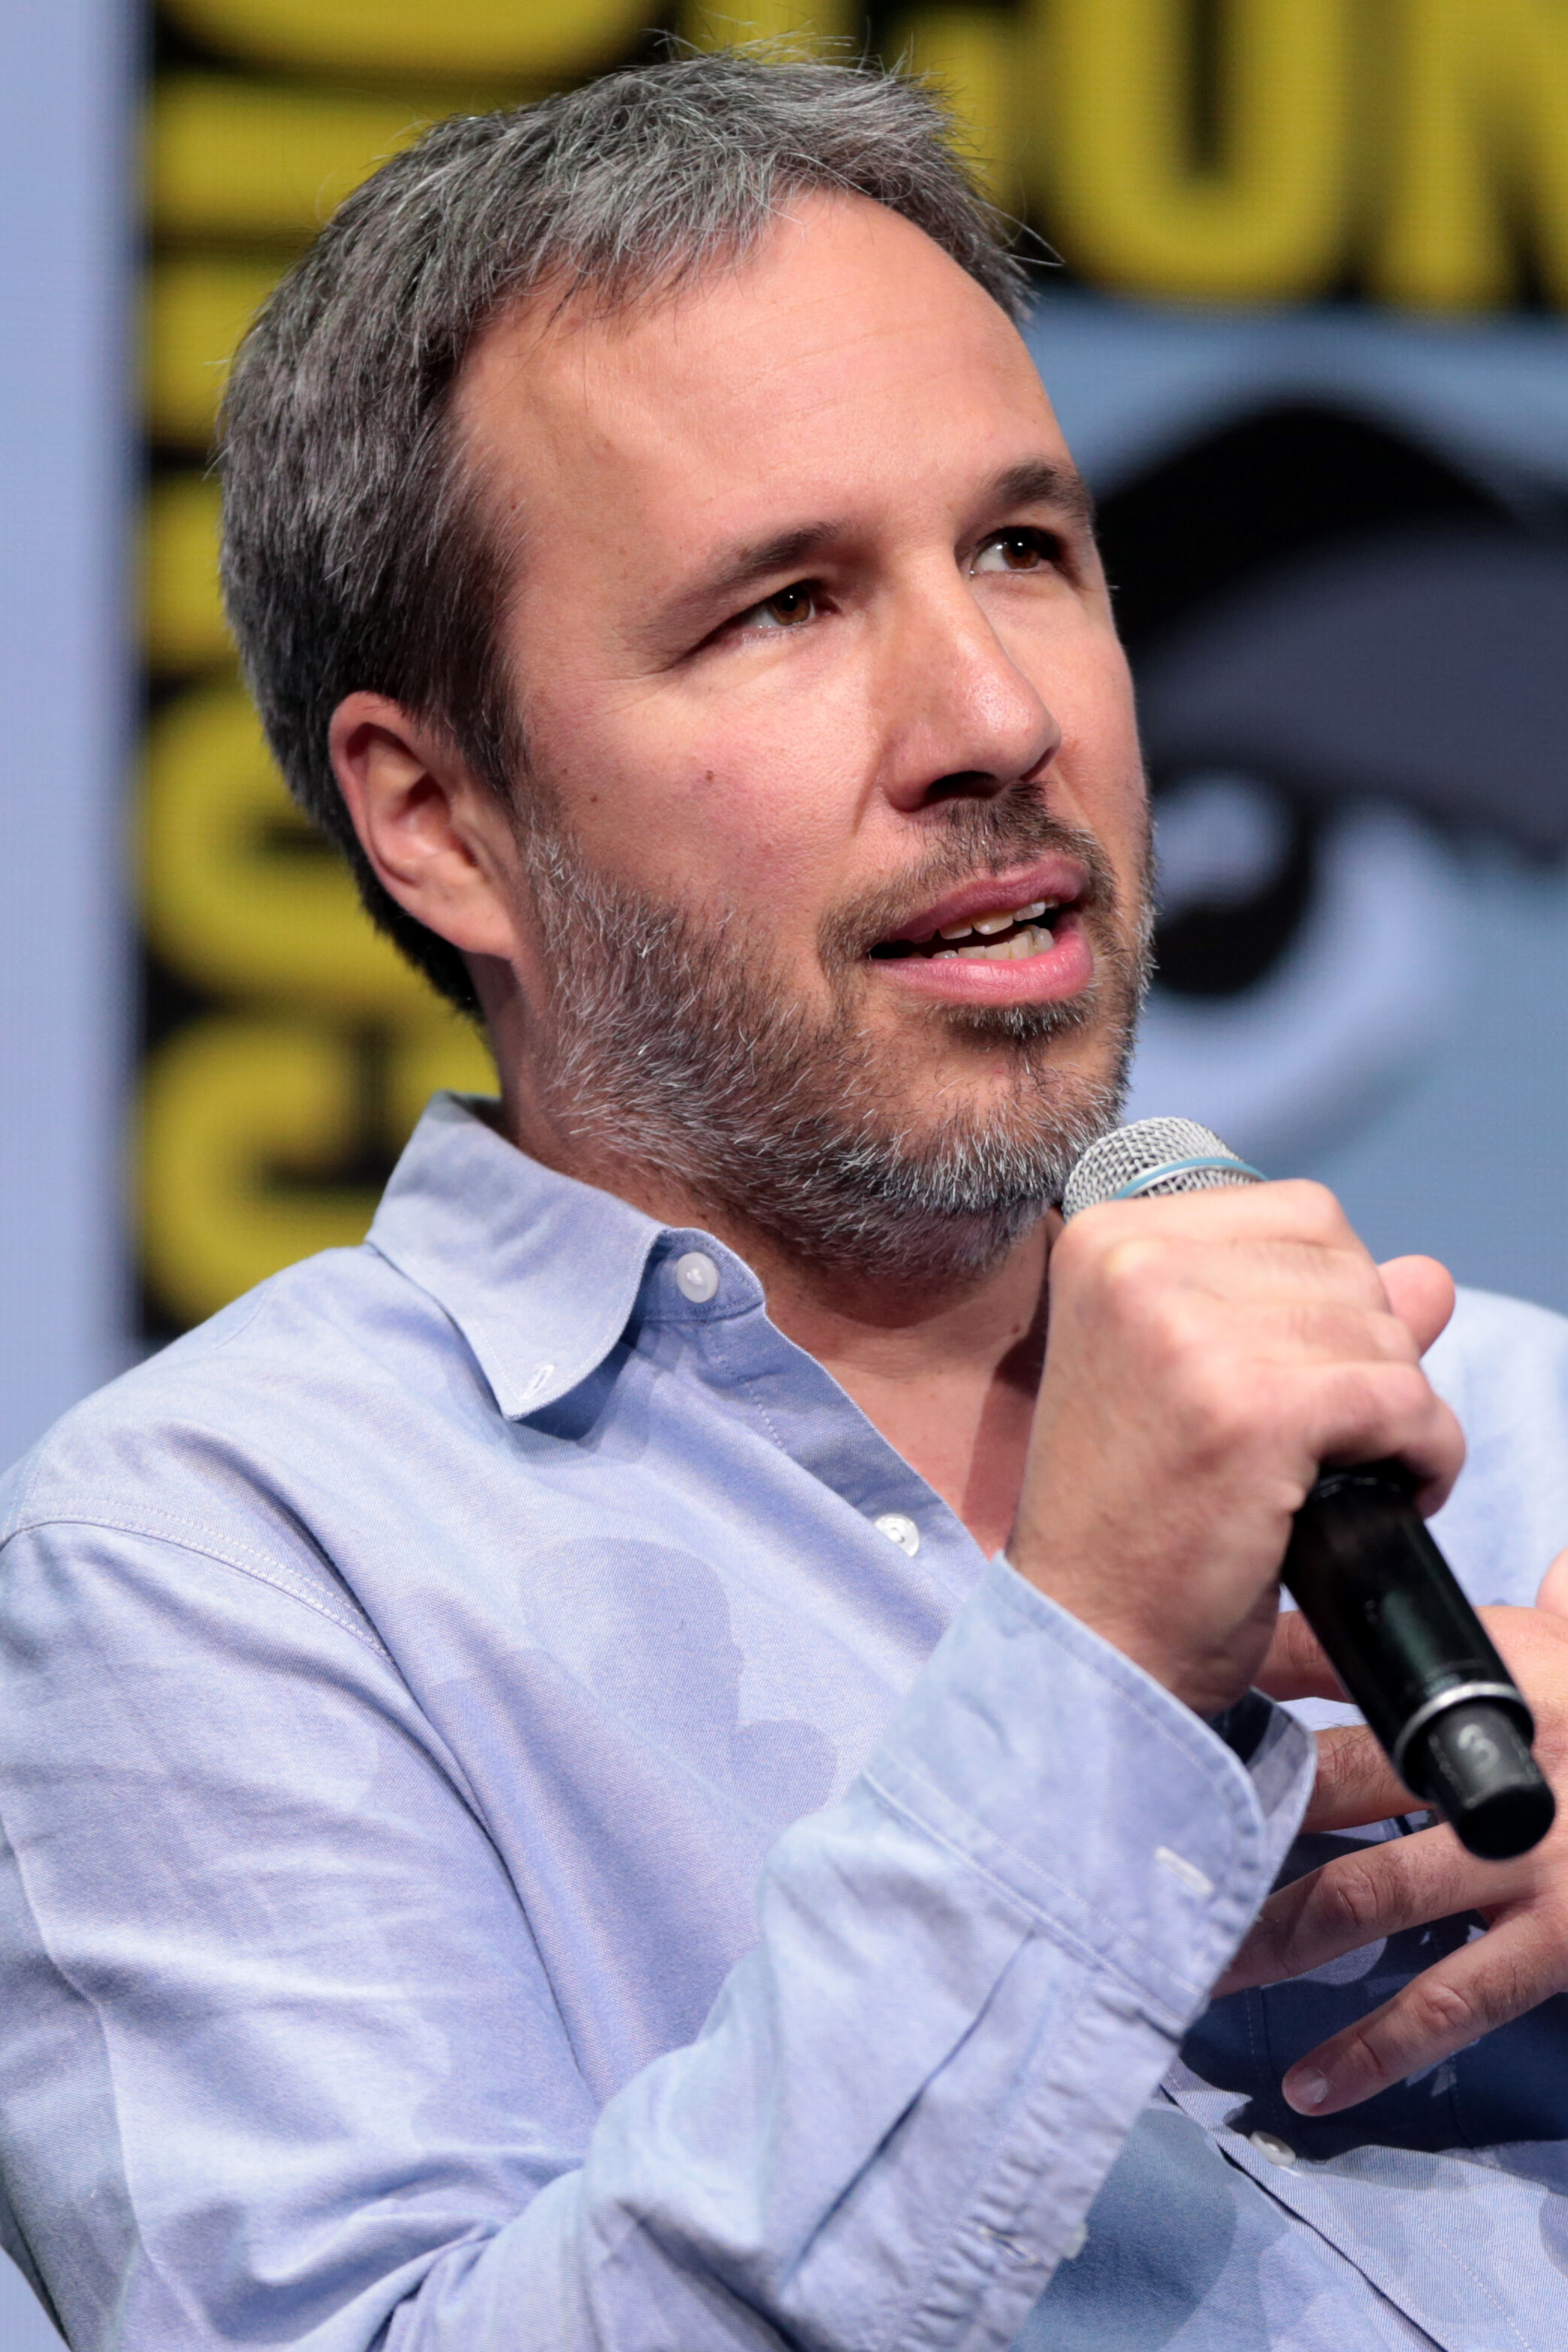 Dune Director Denis Villeneuve Wants to Direct Bond, But Thinks It